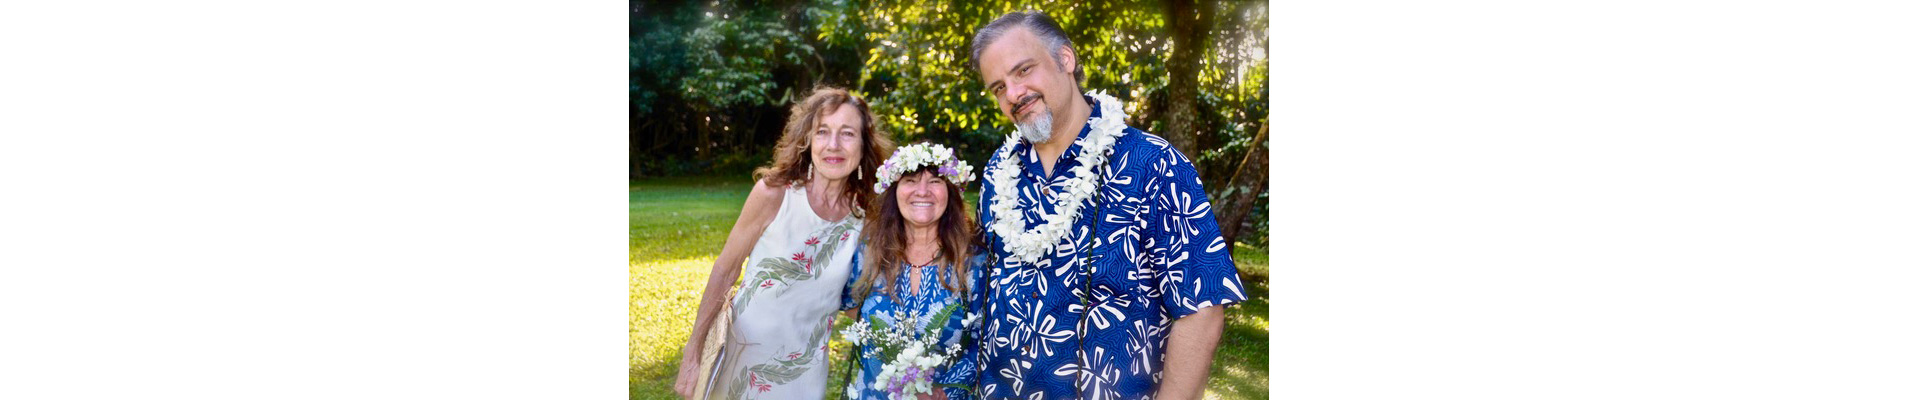 Get Married in Kauai